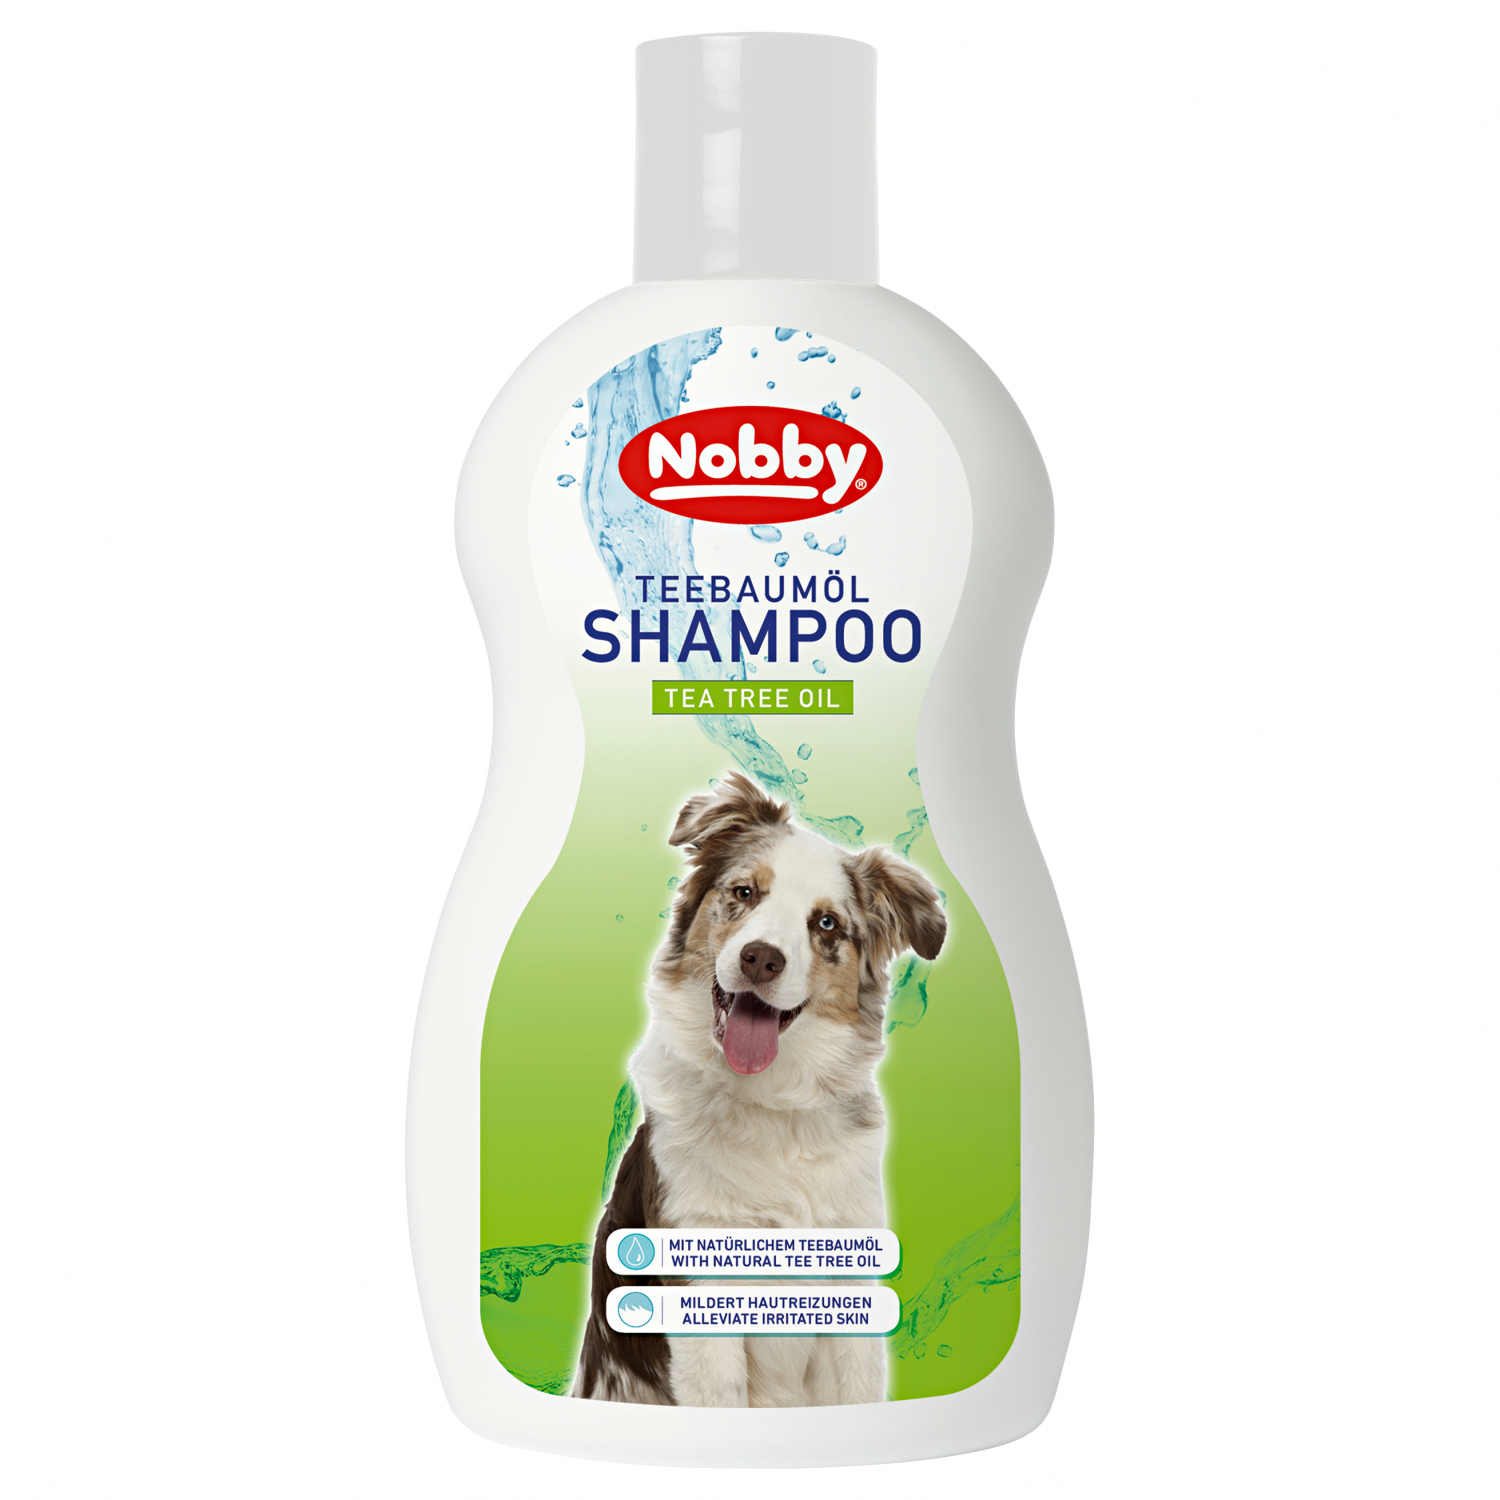 Nobby Dog shampoo (Tea tree oil) 